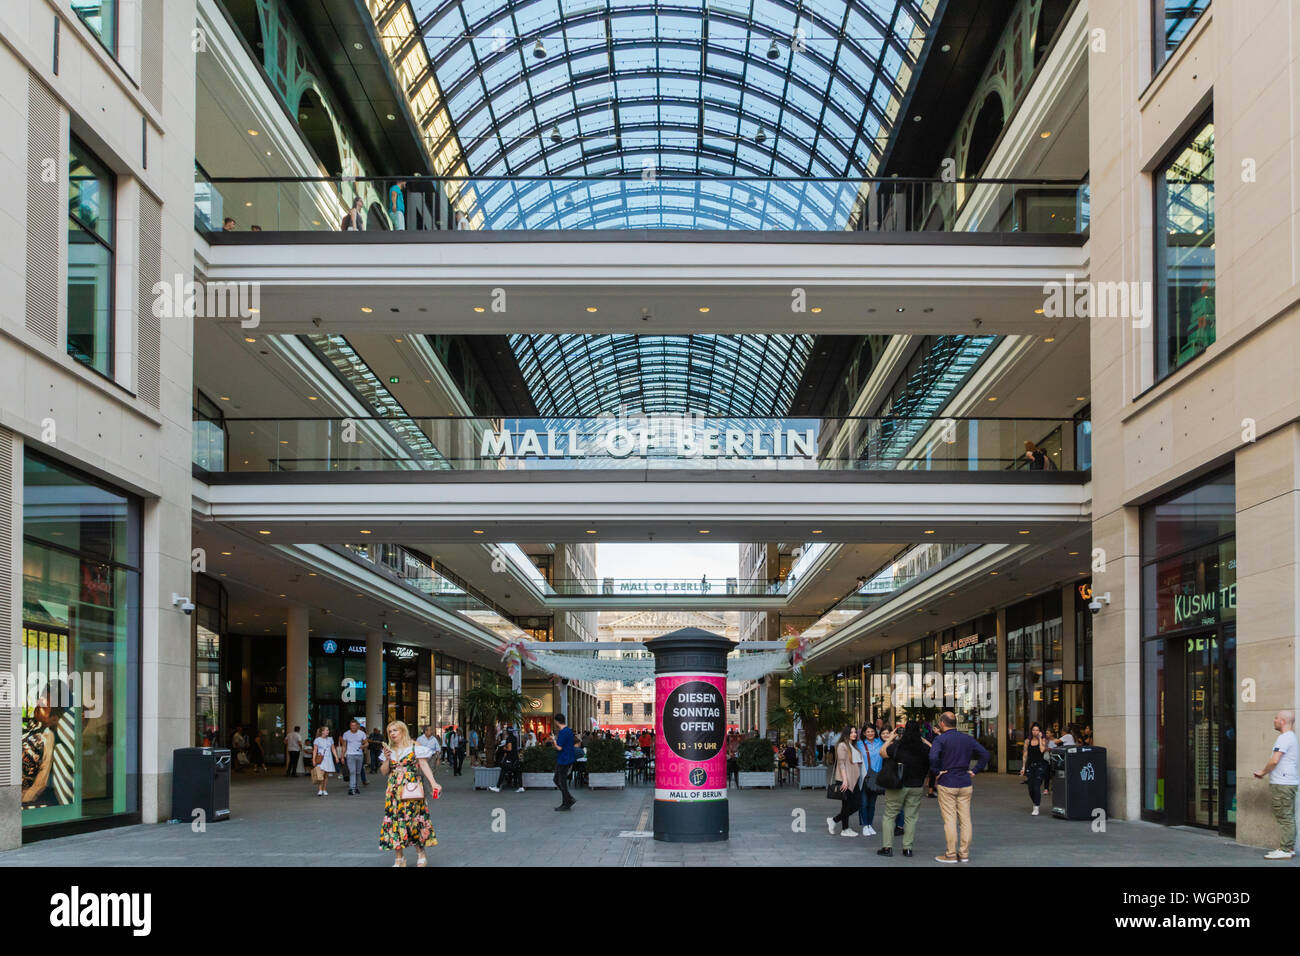 Berlin, Deutschland - Juli 2019: Mall von Berlin archtucture und Käufer - eine neue und moderne Einkaufspassage am Potsdamer Platz. Stockfoto